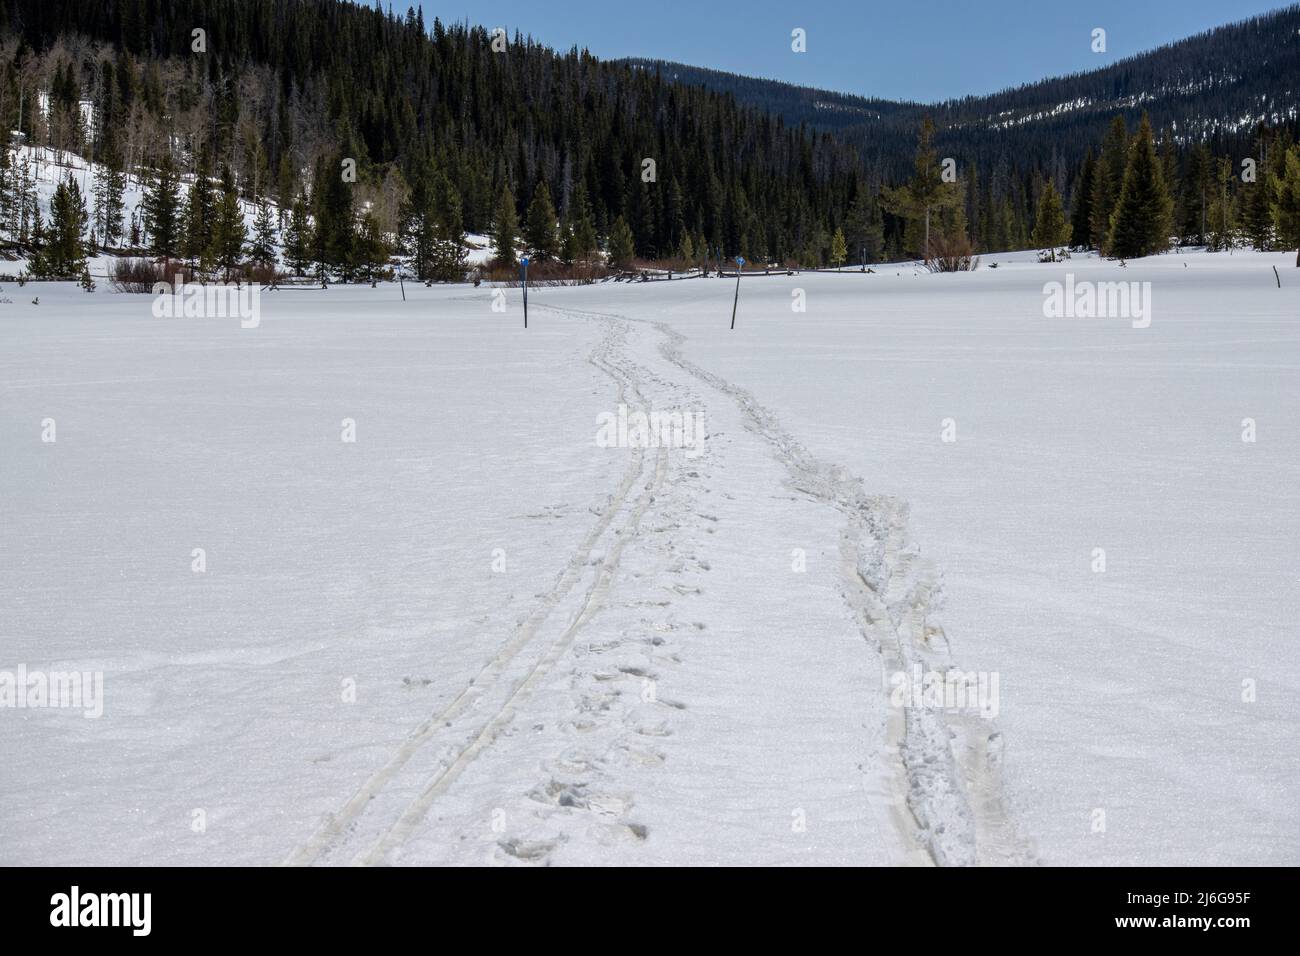 Les pistes de ski de fond et de raquettes marquent un paysage couvert de neige au parc national de State Forest, dans les montagnes Rocheuses du Colorado Banque D'Images